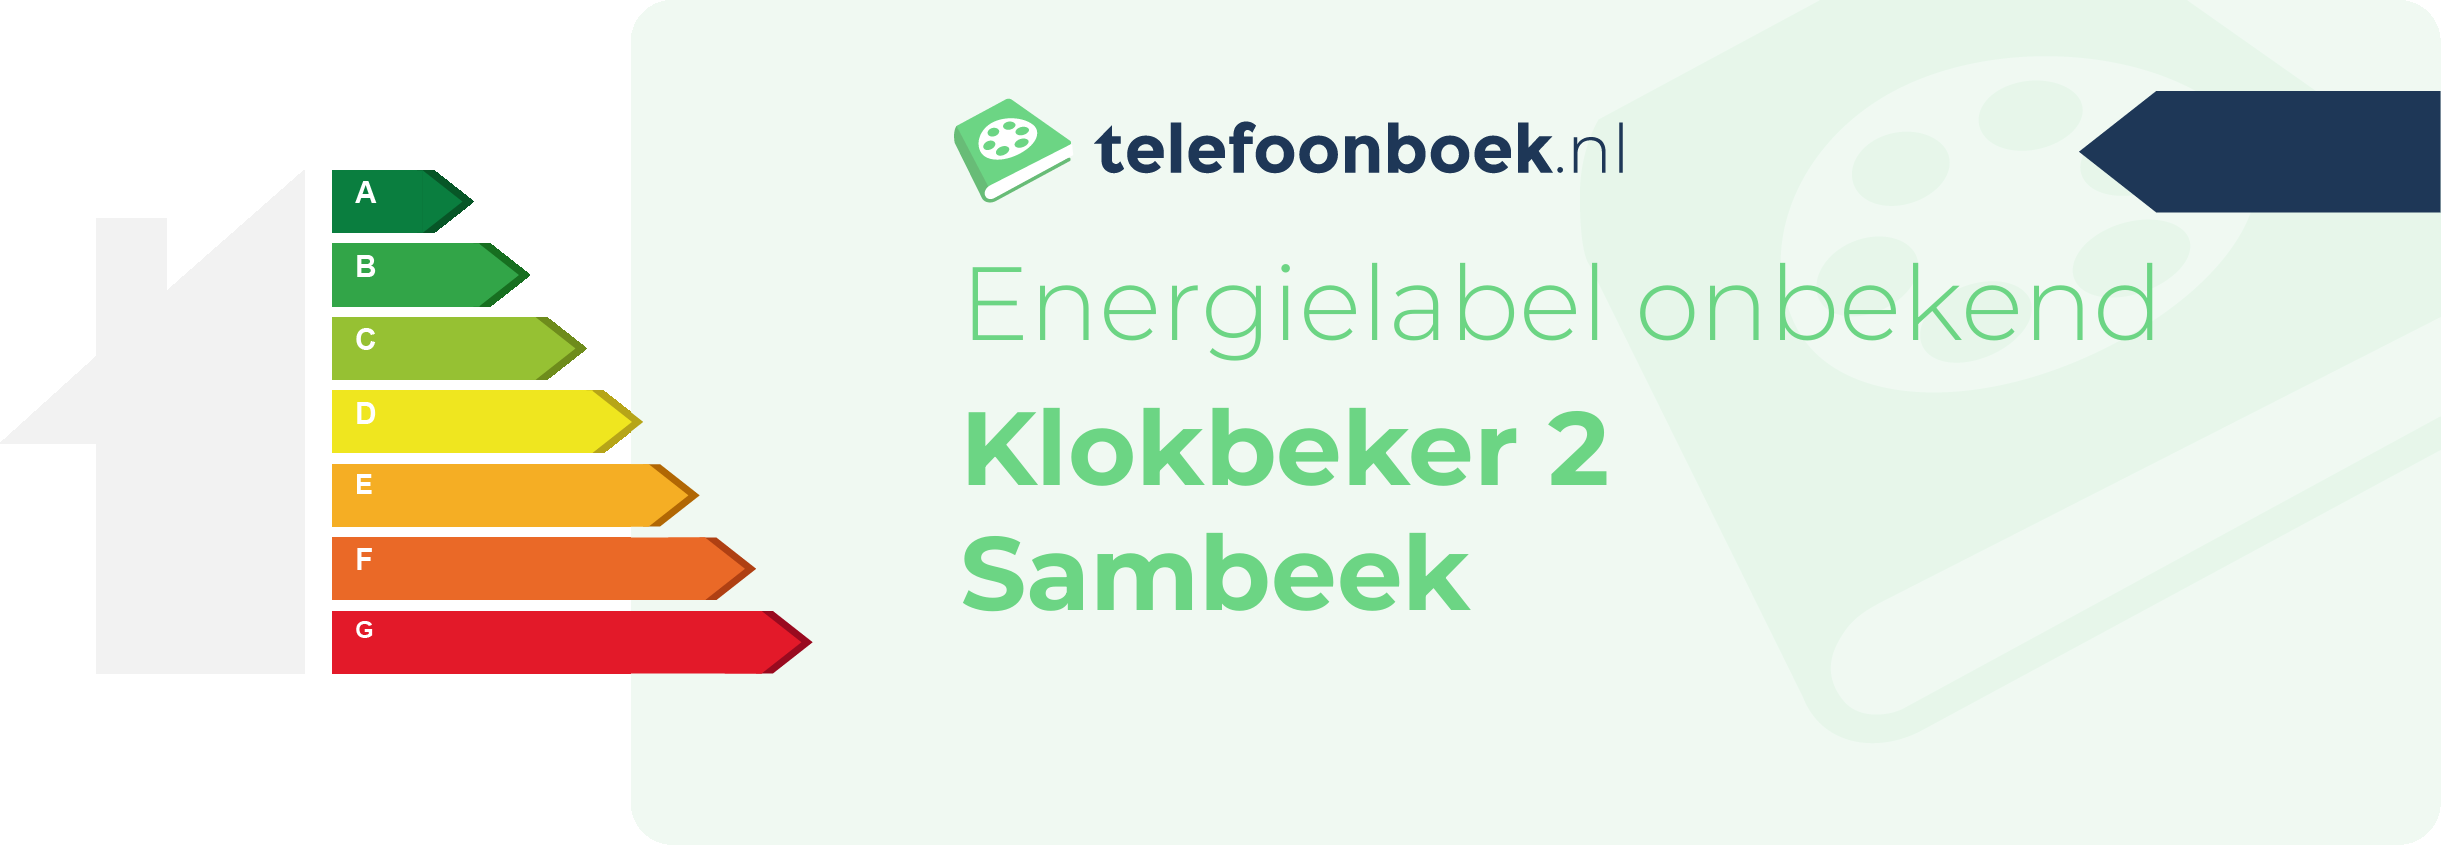 Energielabel Klokbeker 2 Sambeek